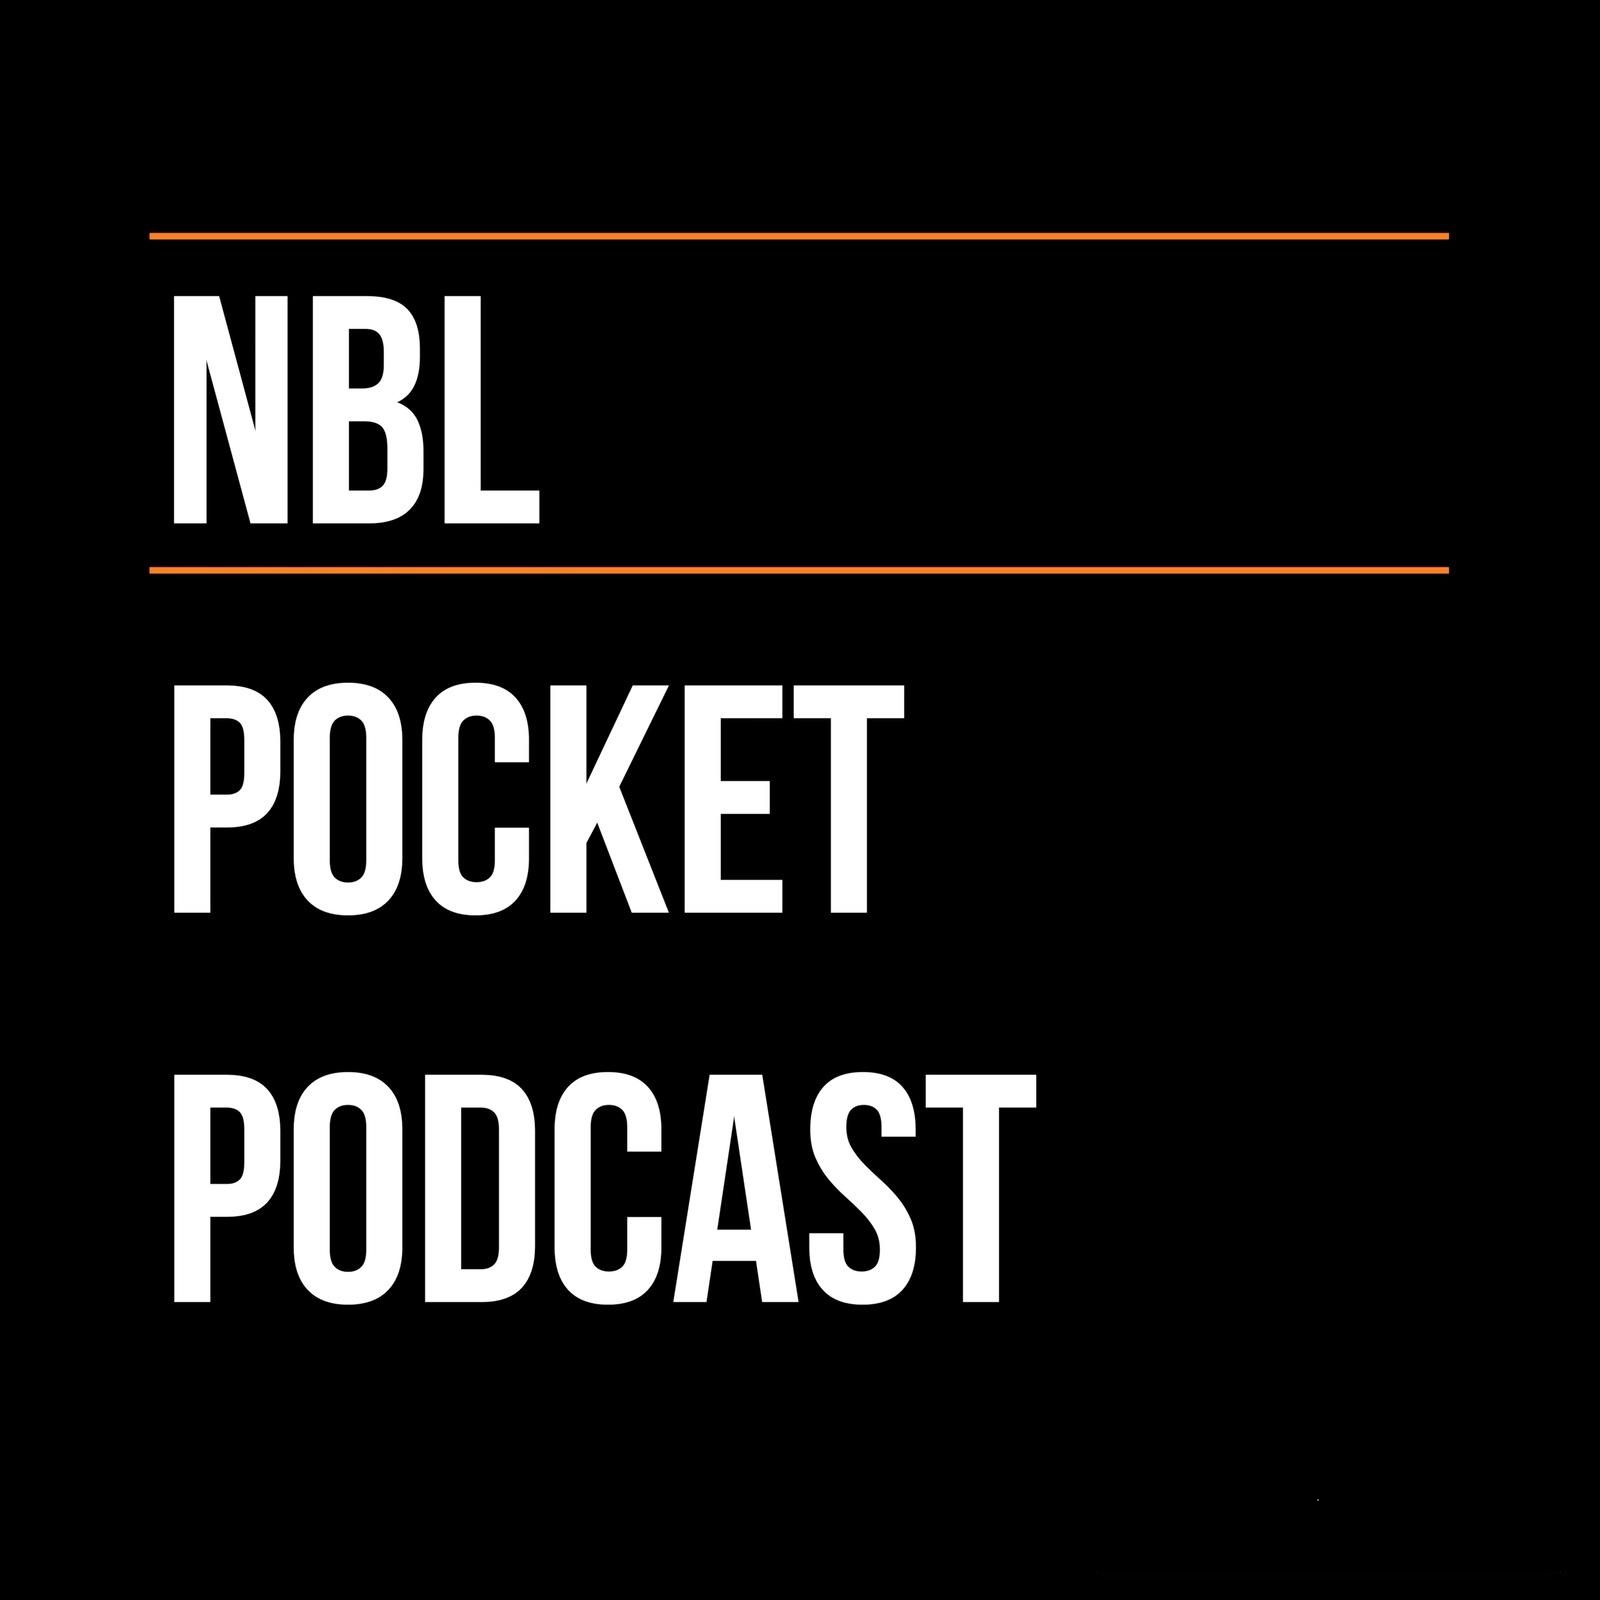 NBL Pocket Podcast